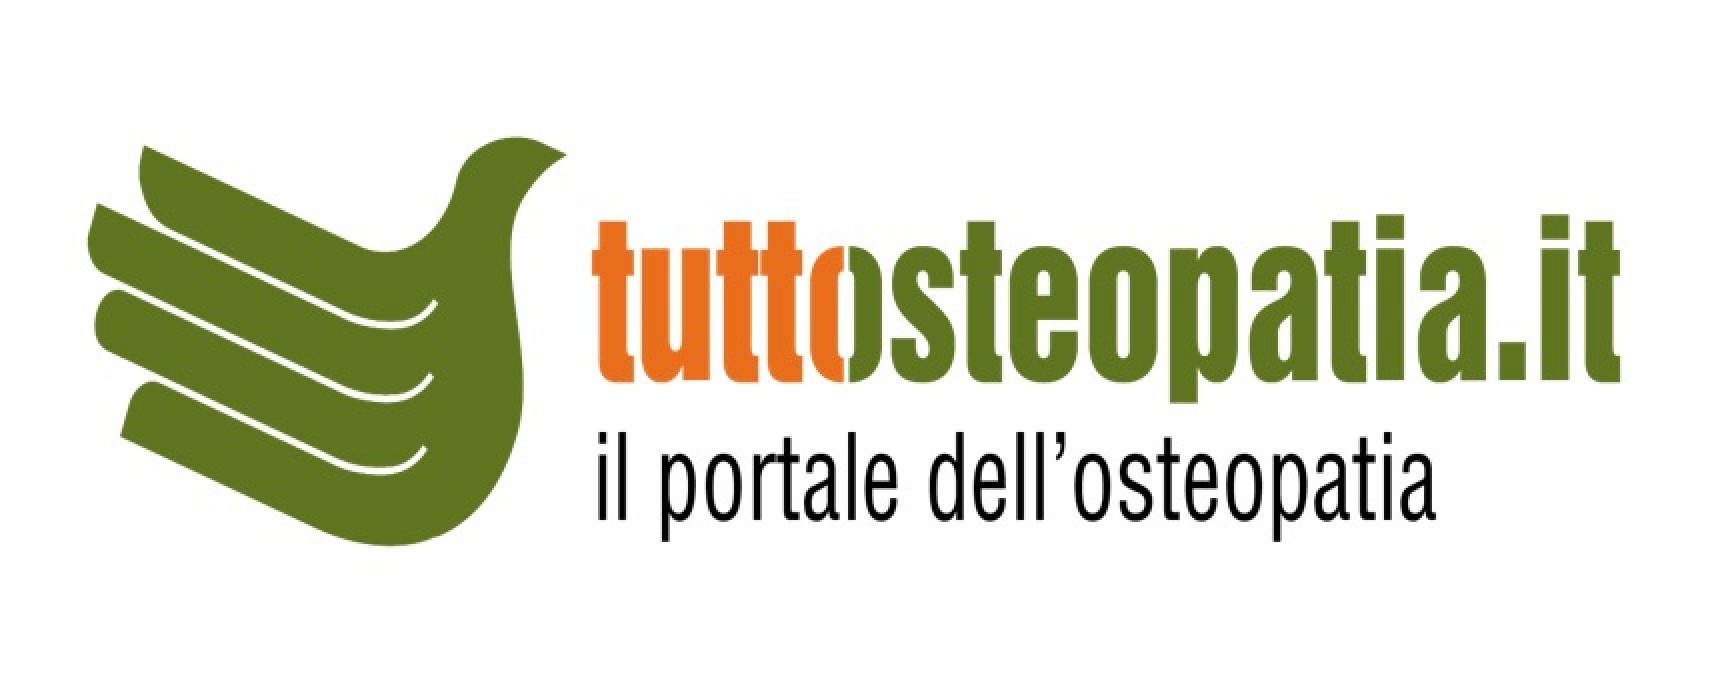 Tuttosteopatia.it: il portale del biscegliese Massimo Valente compie dieci anni